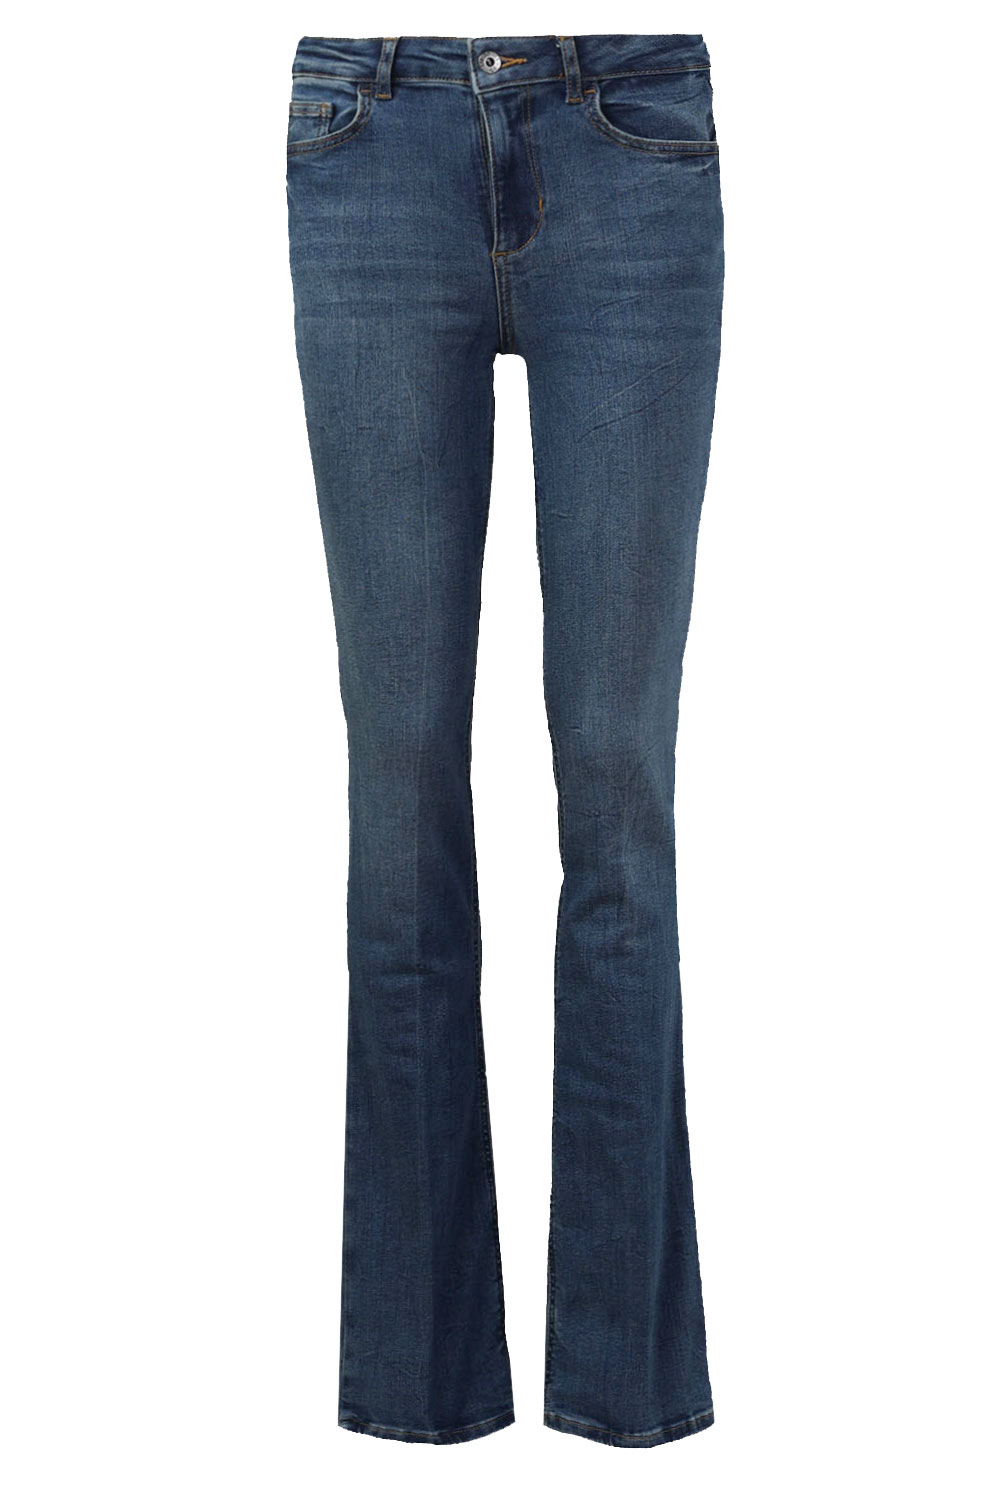 Liu Jo Bootcut high waist jeans L34 Zita blauw